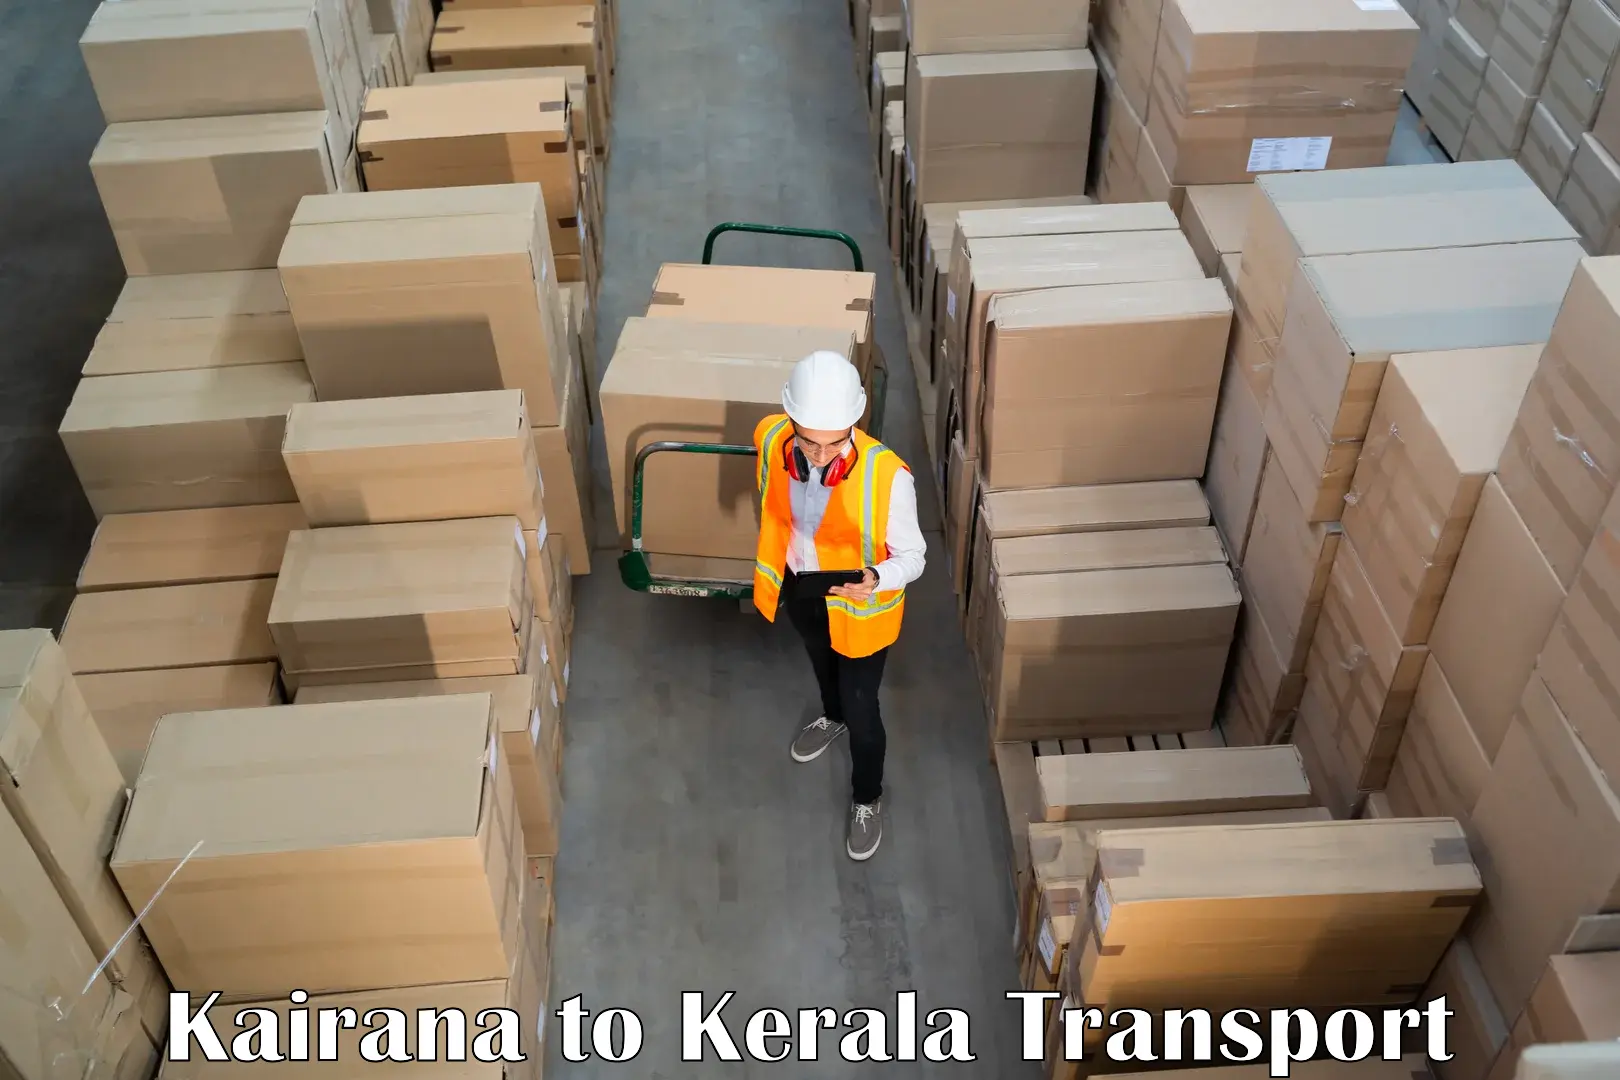 Lorry transport service Kairana to Kerala